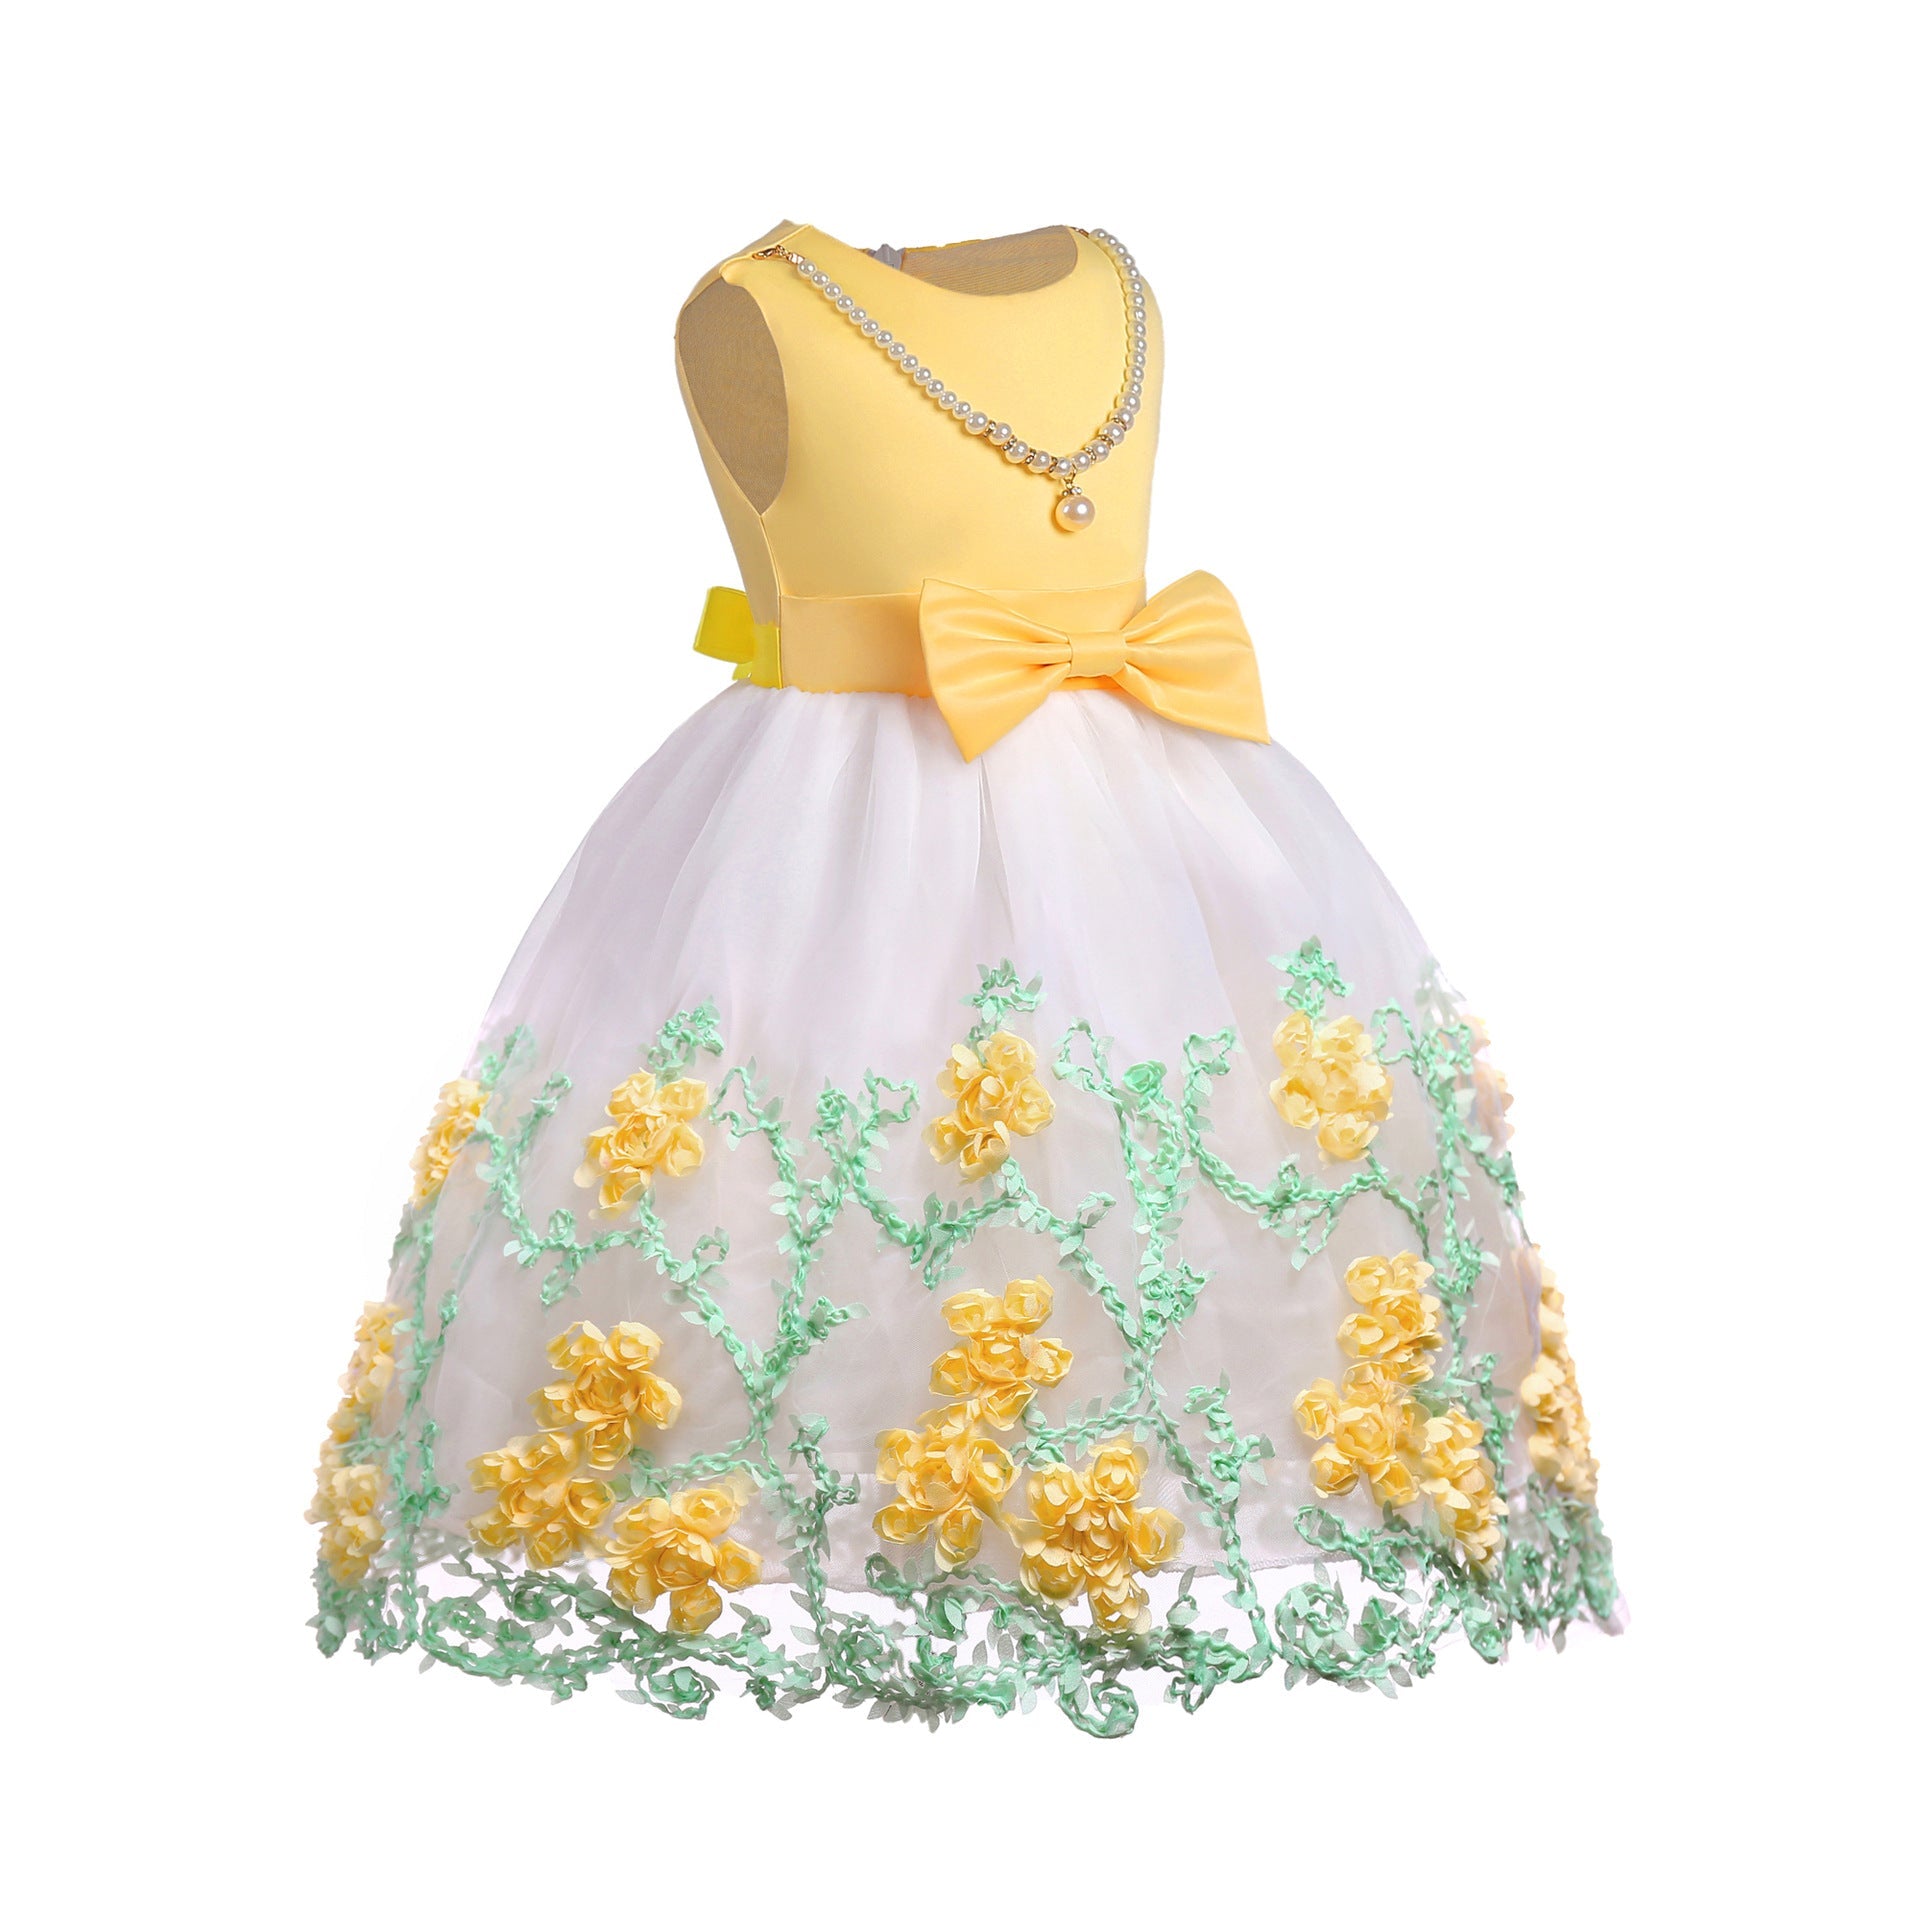 Baby Girl Flower Mesh Overlay Design Bow Tie Vest Dress Birthday